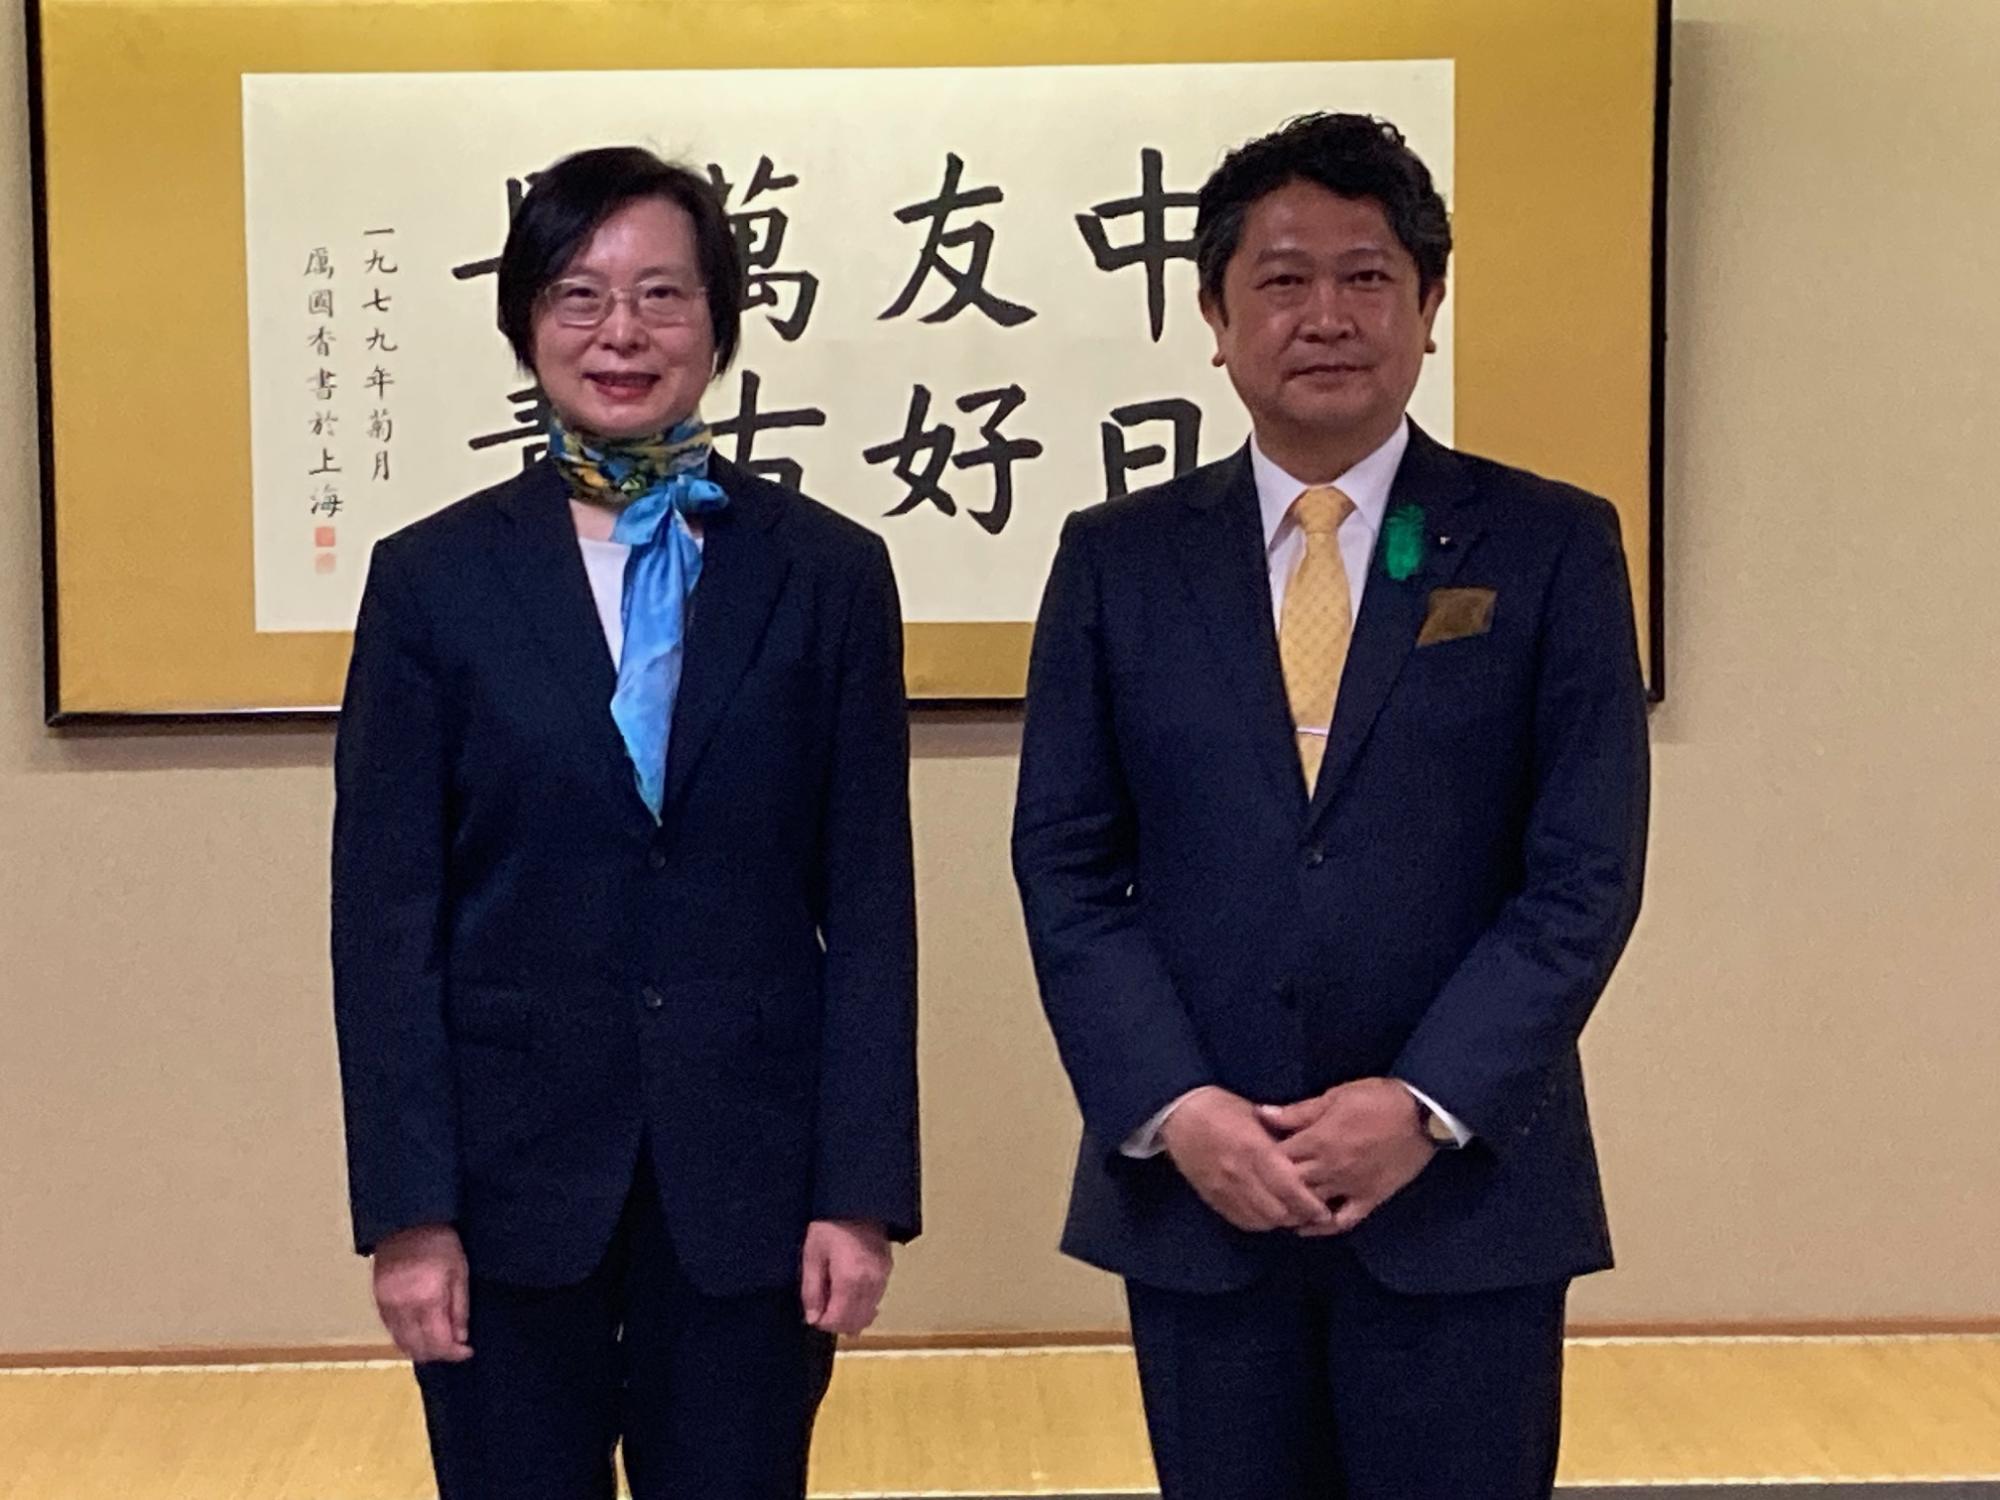 中華人民共和国駐名古屋総領事と市長の写真